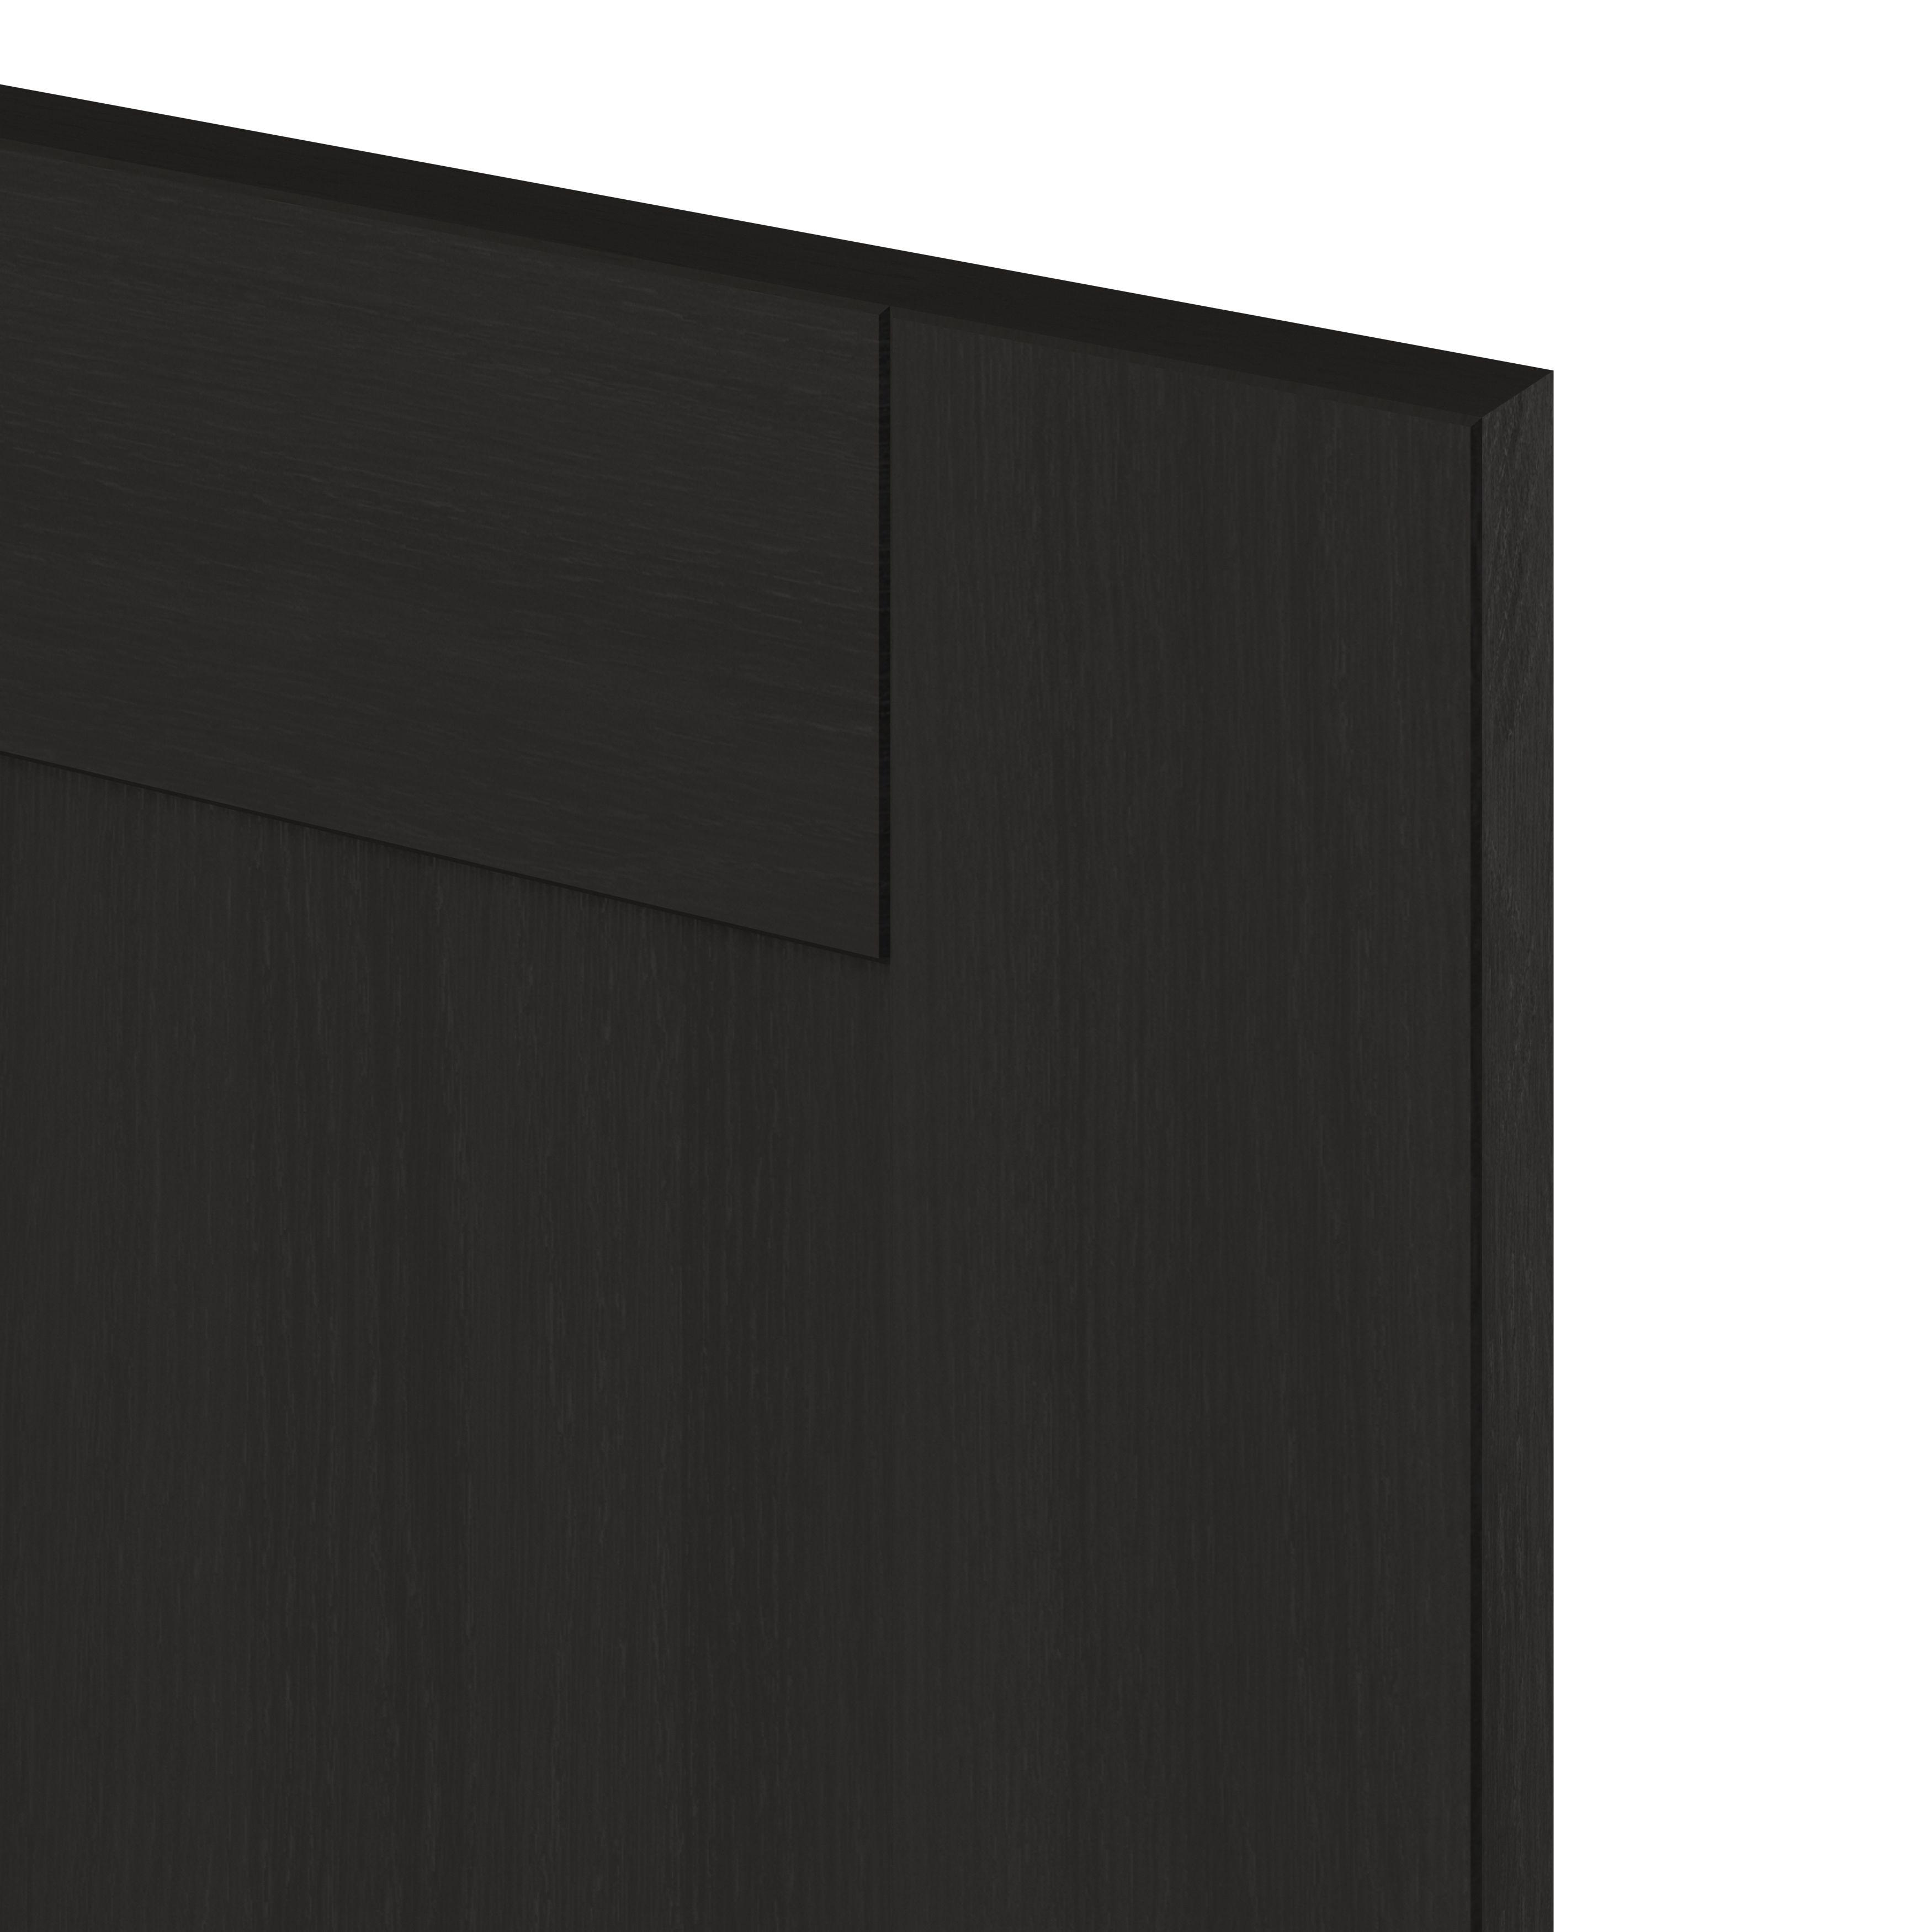 GoodHome Verbena Matt charcoal Drawer front, bridging door & bi fold door, (W)800mm (H)356mm (T)20mm